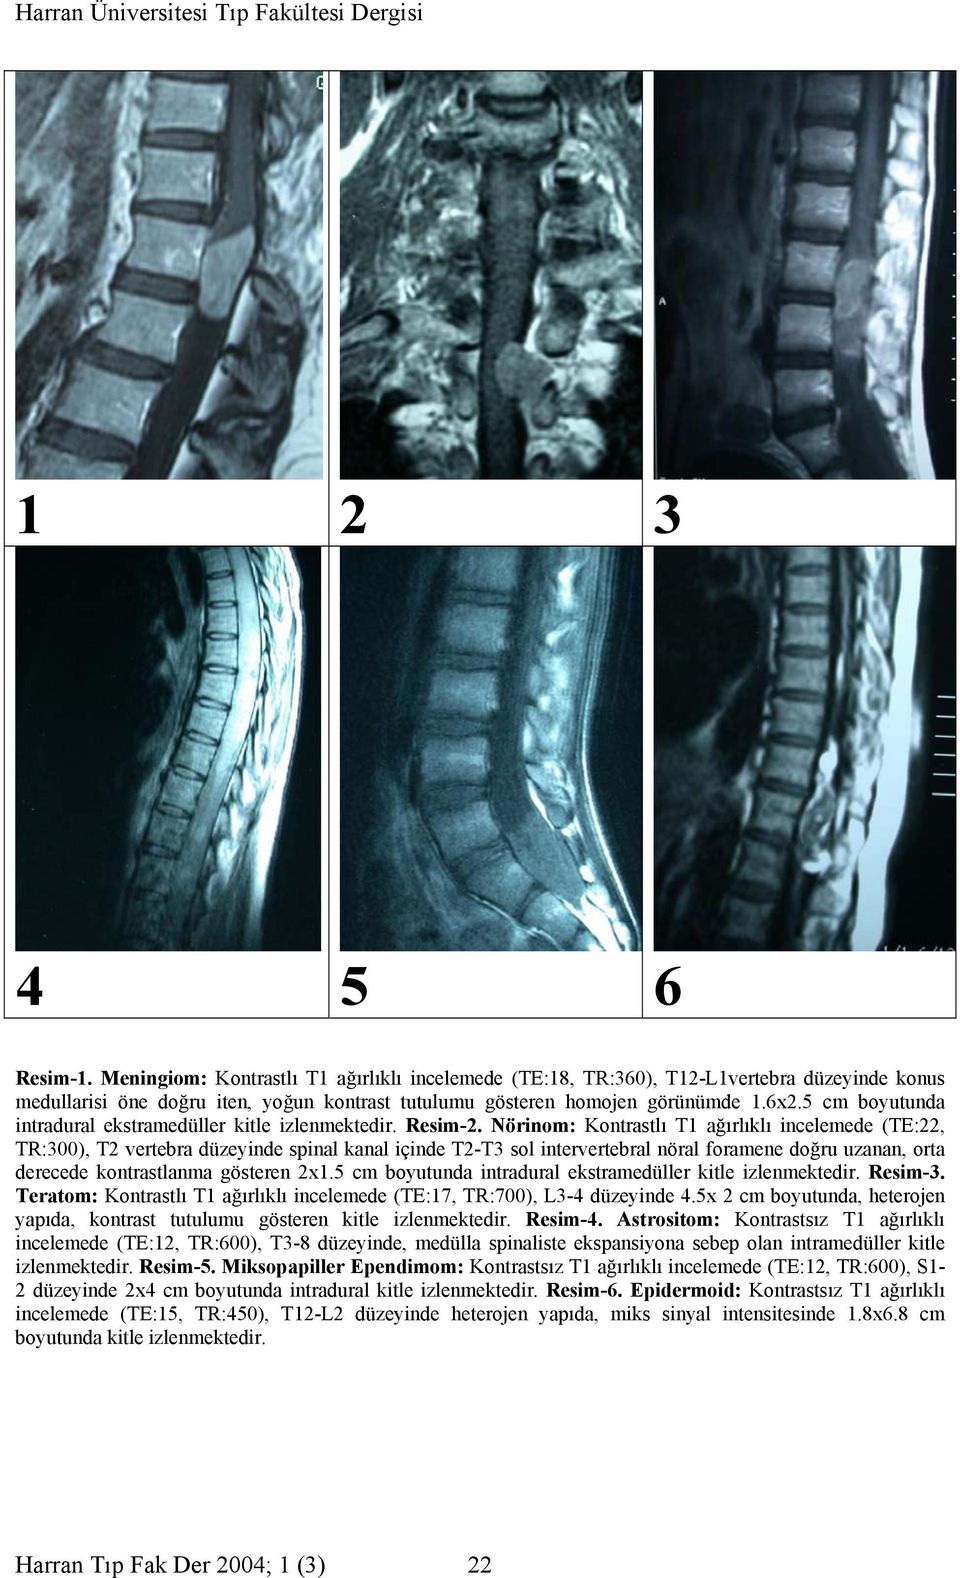 Nörinom: Kontrastlı T1 ağırlıklı incelemede (TE:22, TR:300), T2 vertebra düzeyinde spinal kanal içinde T2-T3 sol intervertebral nöral foramene doğru uzanan, orta derecede kontrastlanma gösteren 2x1.